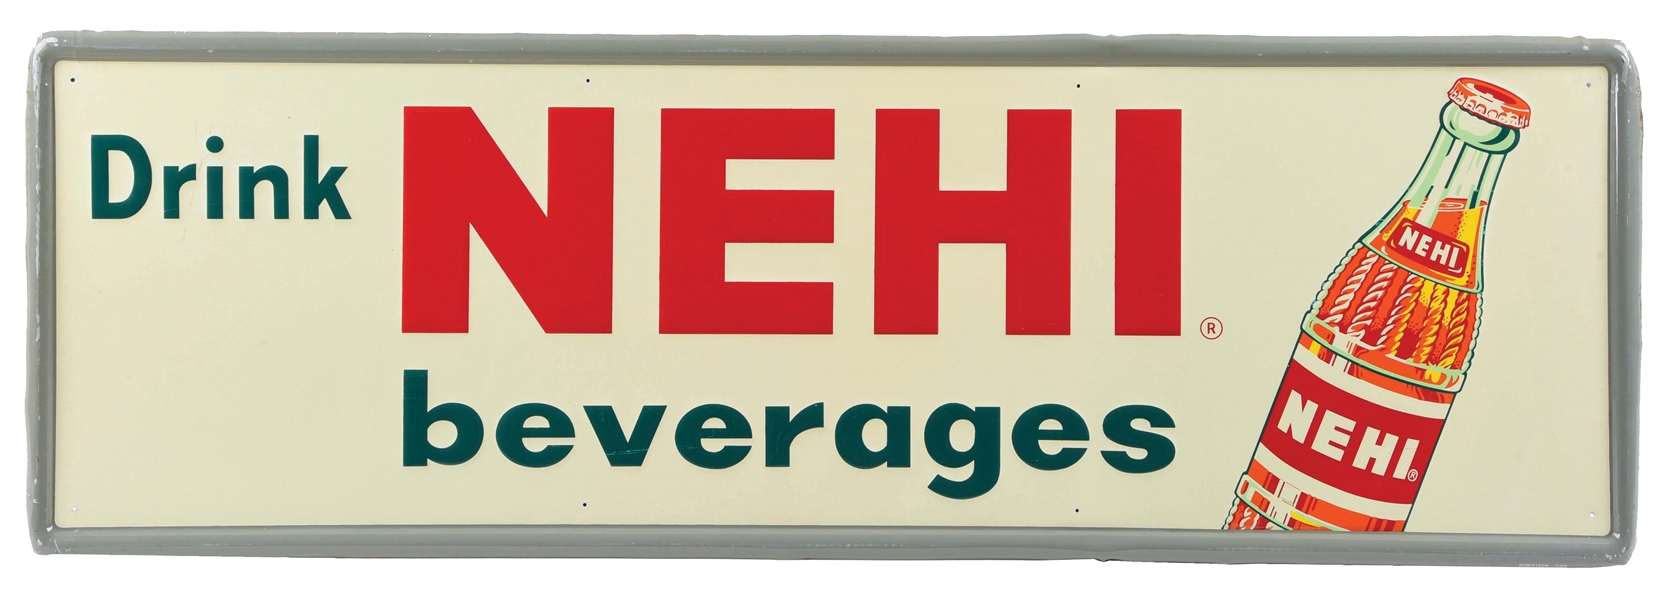 DRINK NEHI BEVERAGES SELF-FRAMED EMBOSSED TIN SIGN.